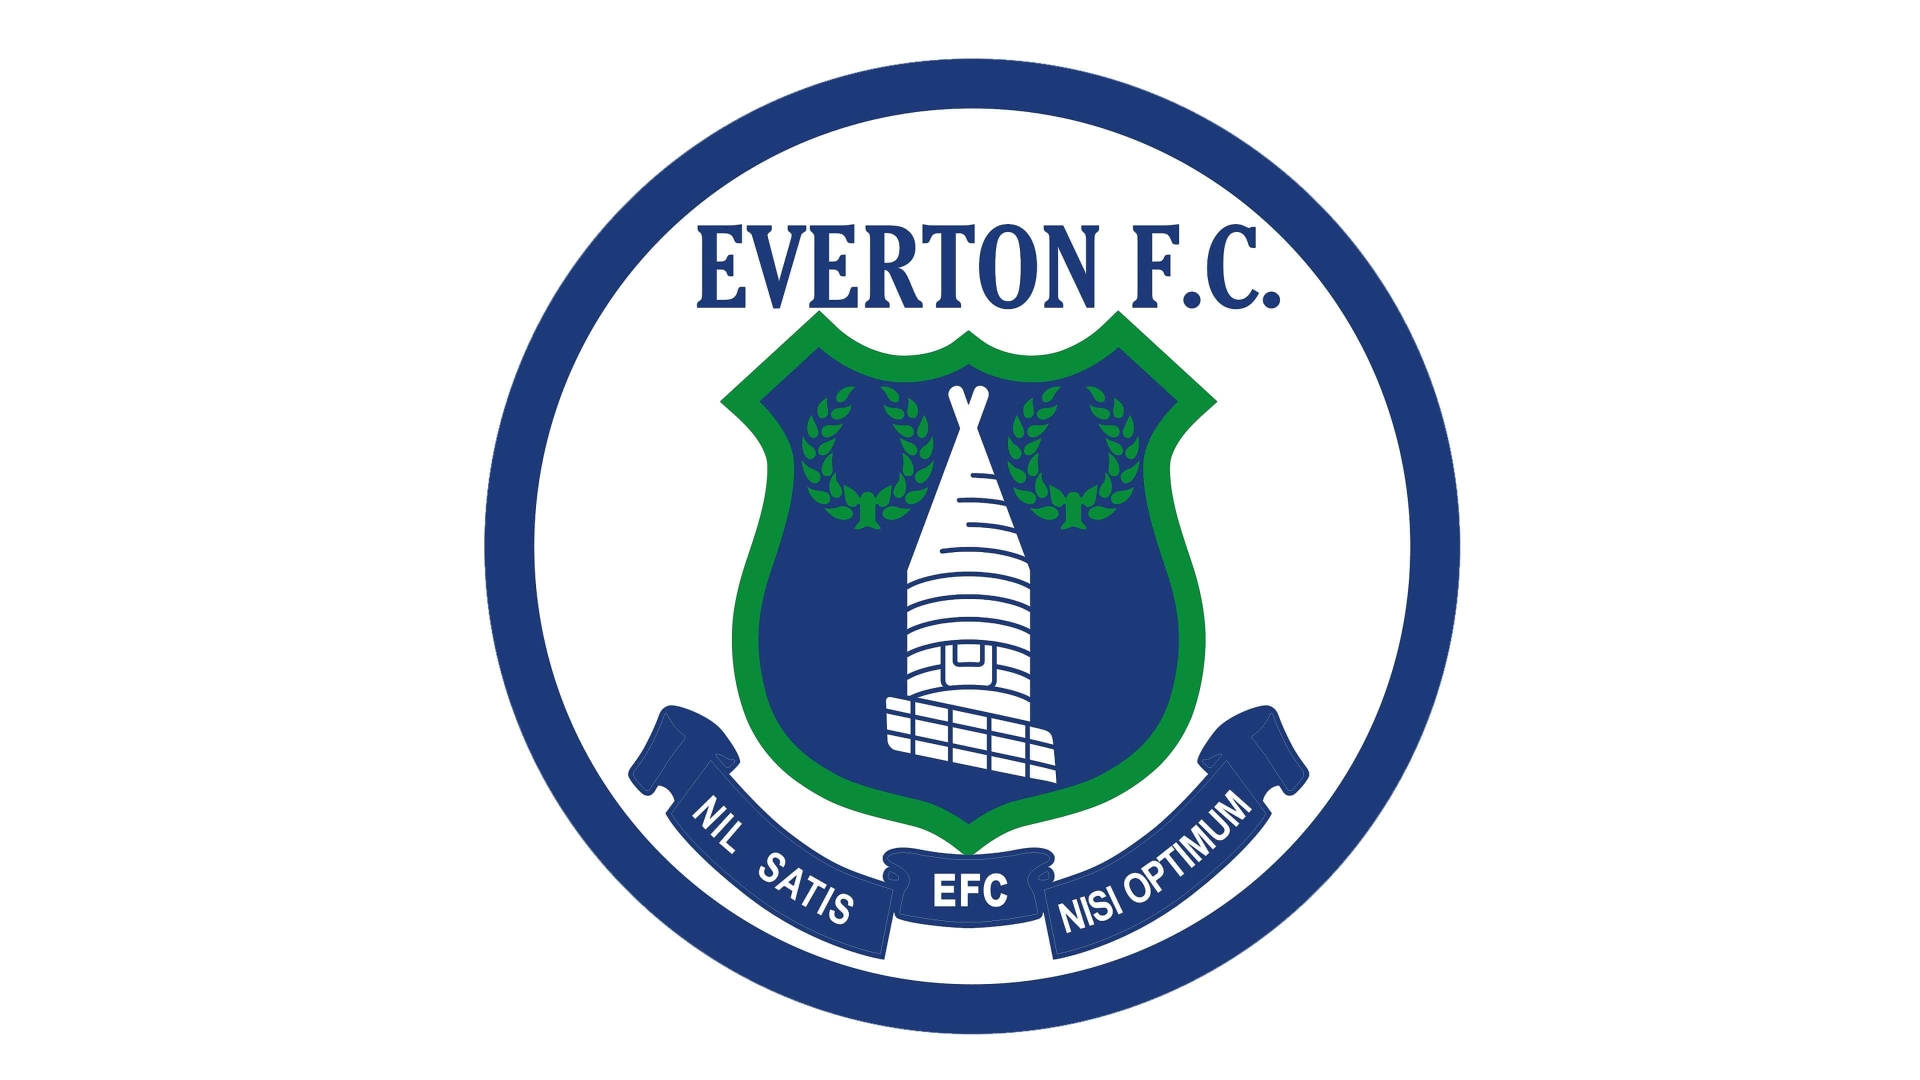 1978 Everton F.c. Emblem